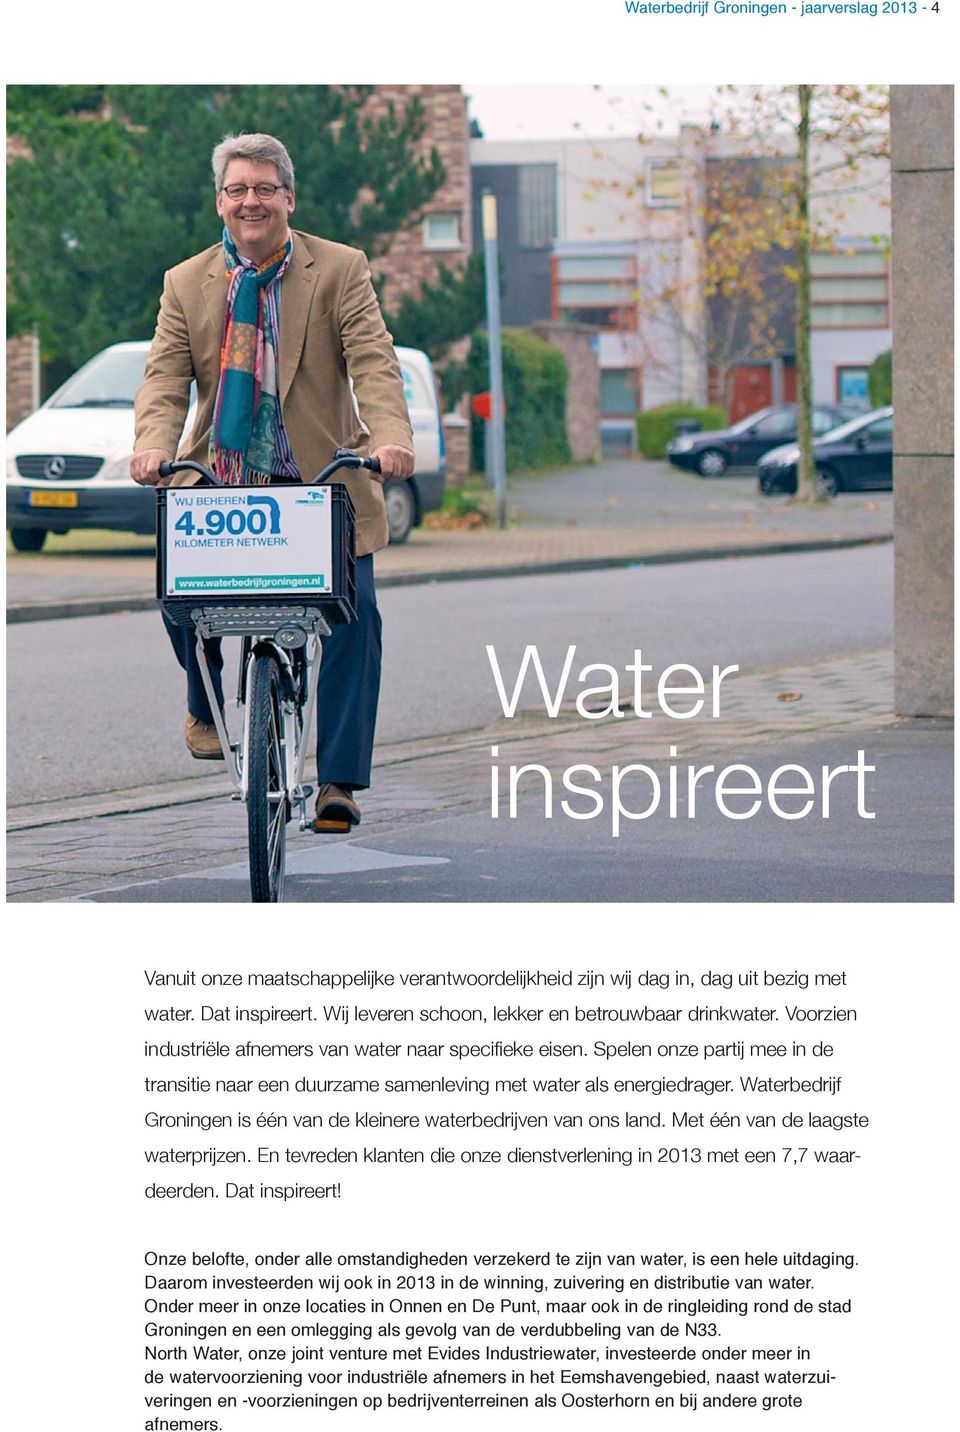 Spelen onze partij mee in de transitie naar een duurzame samenleving met water als energiedrager. Waterbedrijf Groningen is één van de kleinere waterbedrijven van ons land.